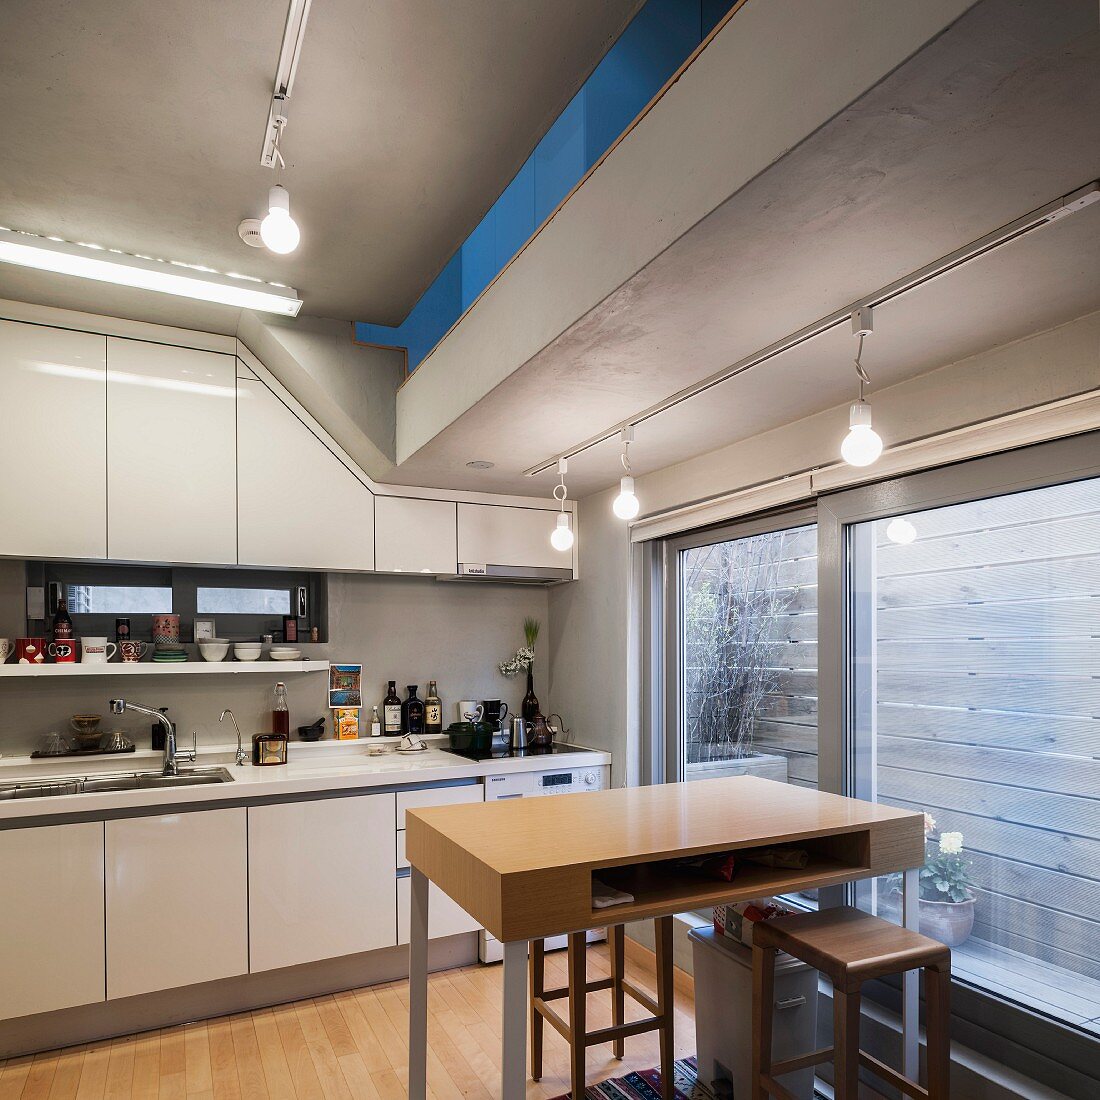 Einbauküche in südkoreanischem Haus; Schiebetür zu Freisitz mit Sichtschutzwand und Öffnungsschlitz zum Obergeschoss